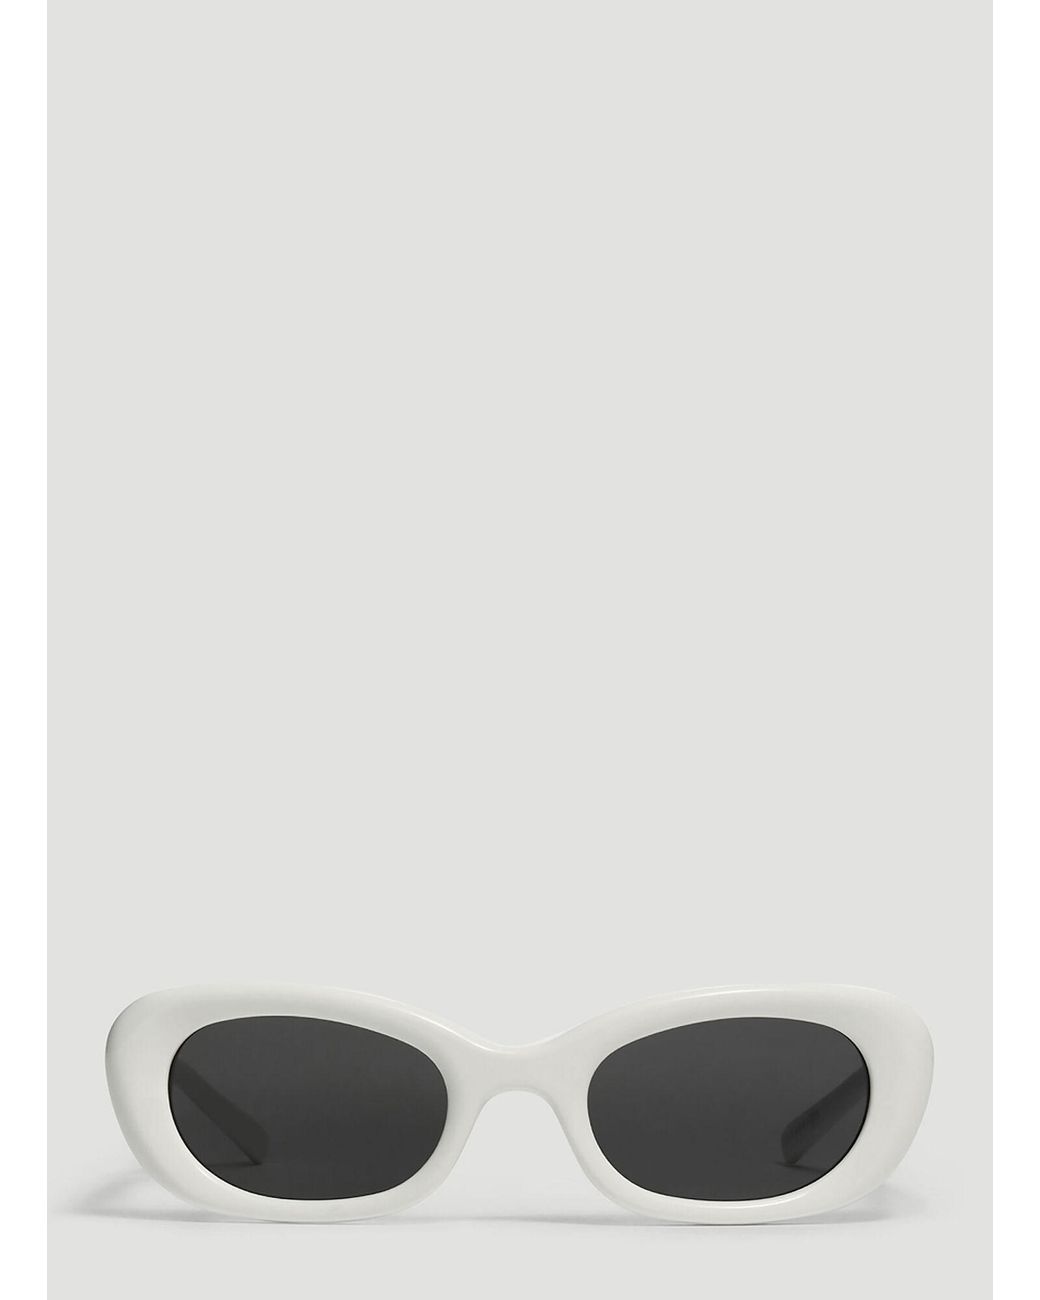 Gentle Monster X Maison Margiela Mm004 Sunglasses in White | Lyst